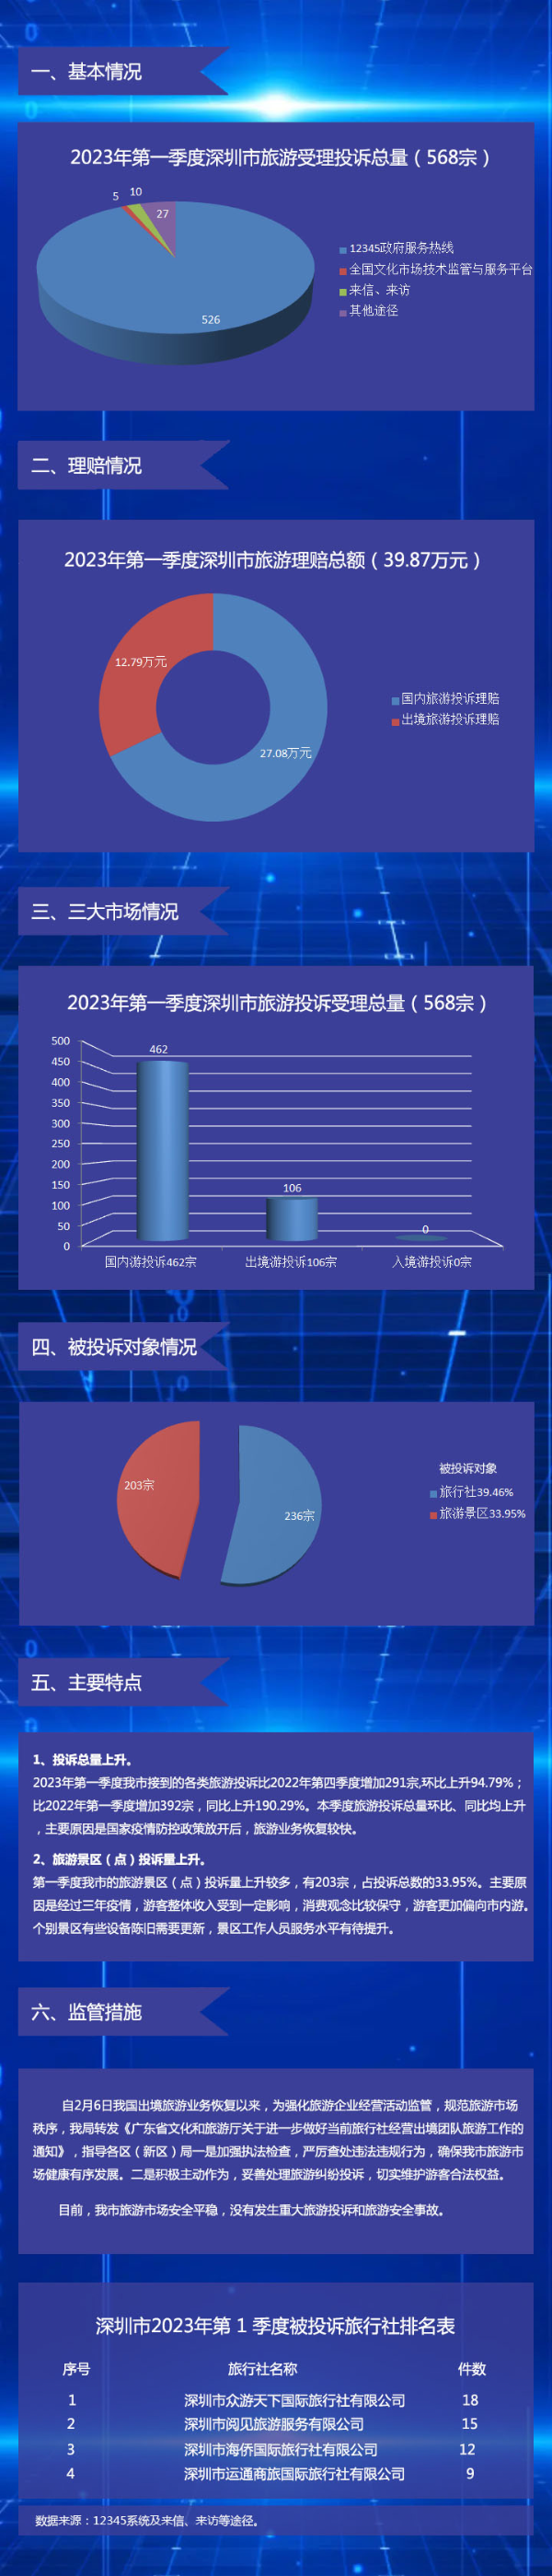 【图解】深圳市旅游监管简报（2023年第一季度）